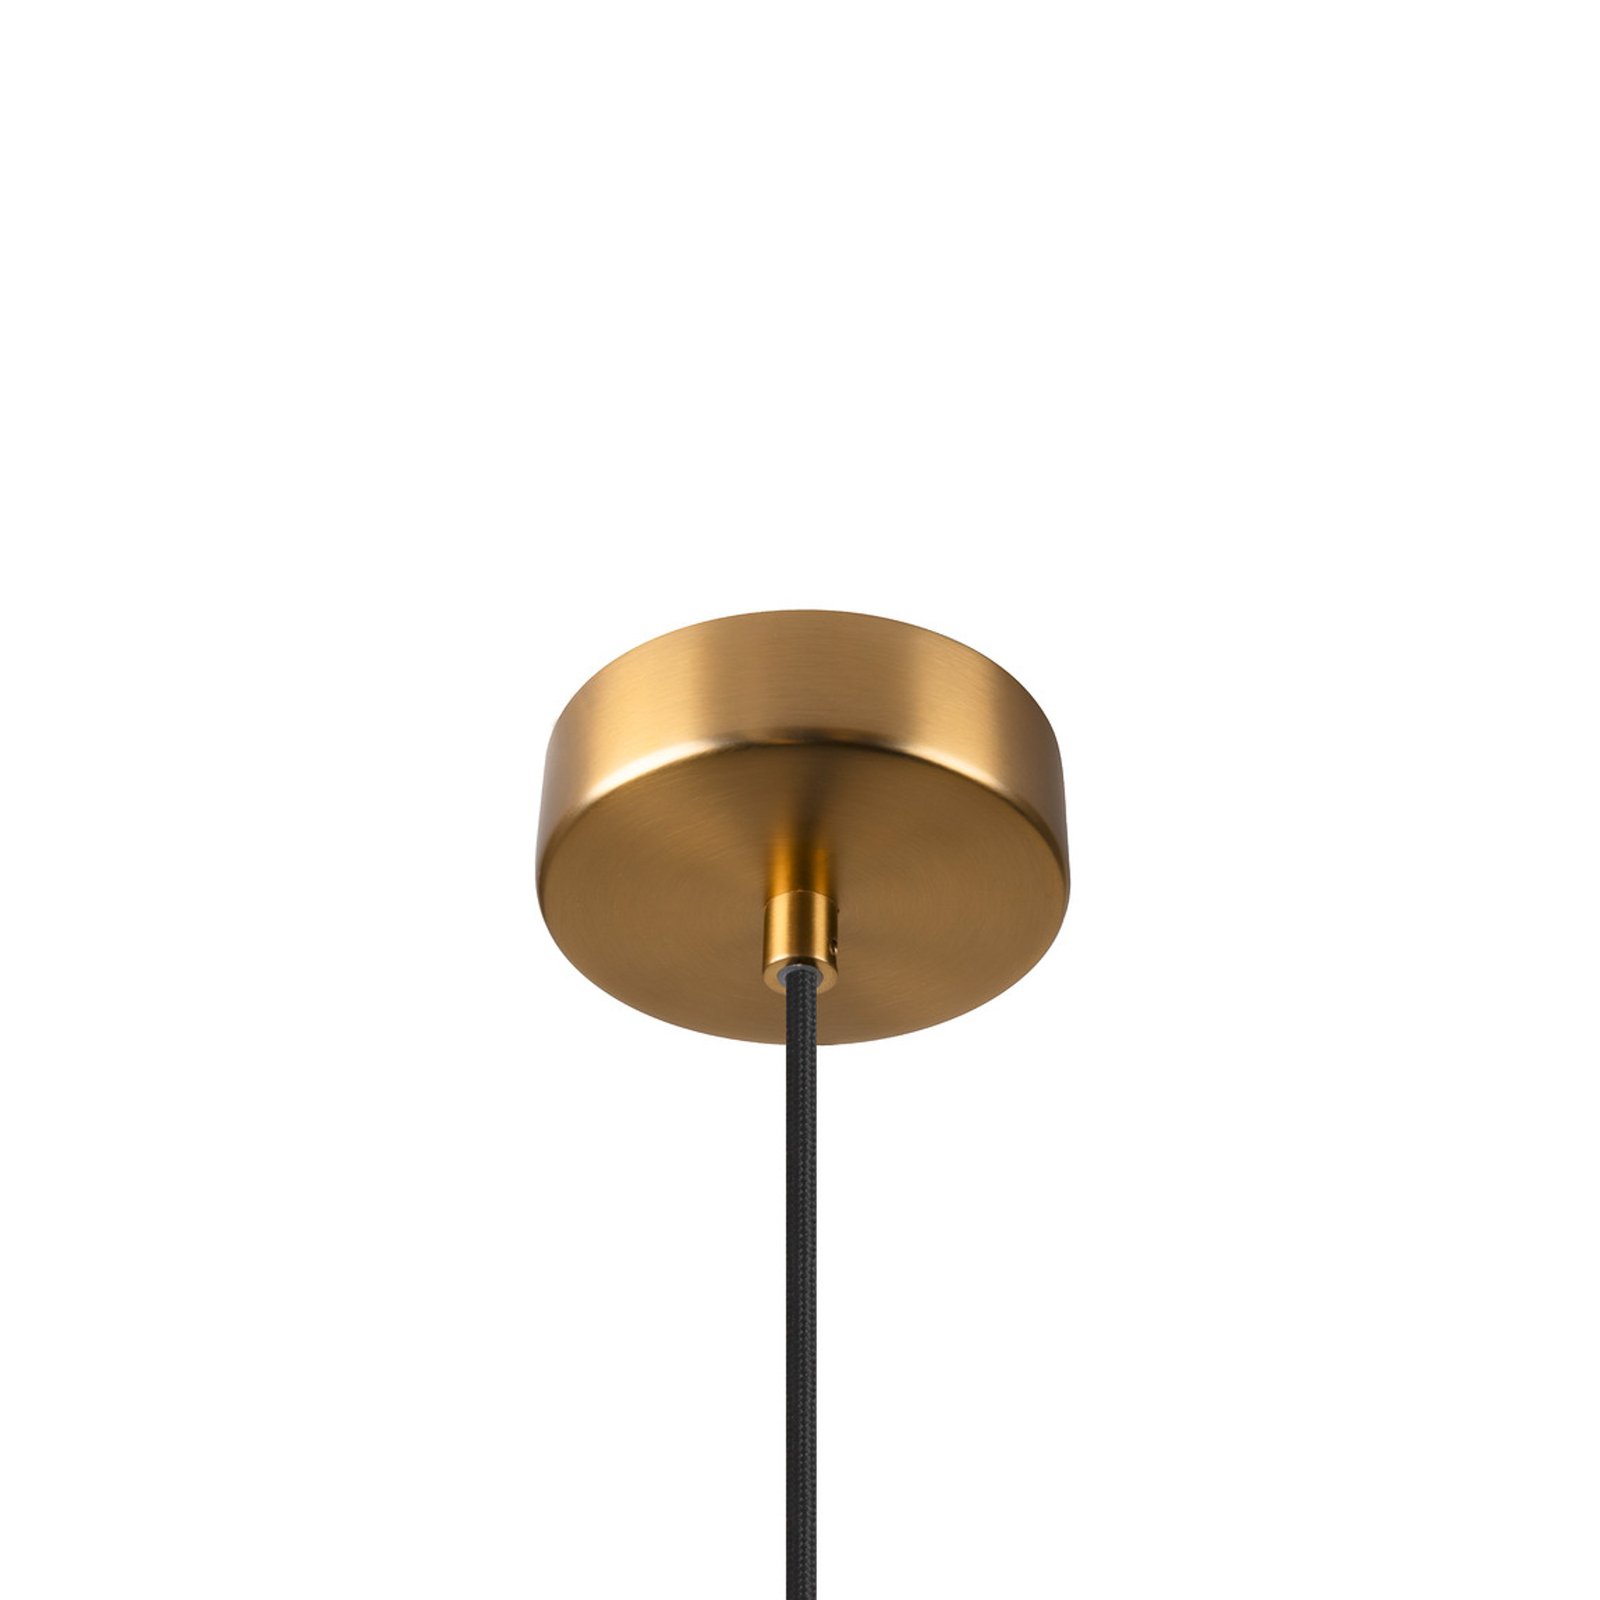 Pantilo Rope 27 hanging light, gold-coloured, steel, Ø 27 cm